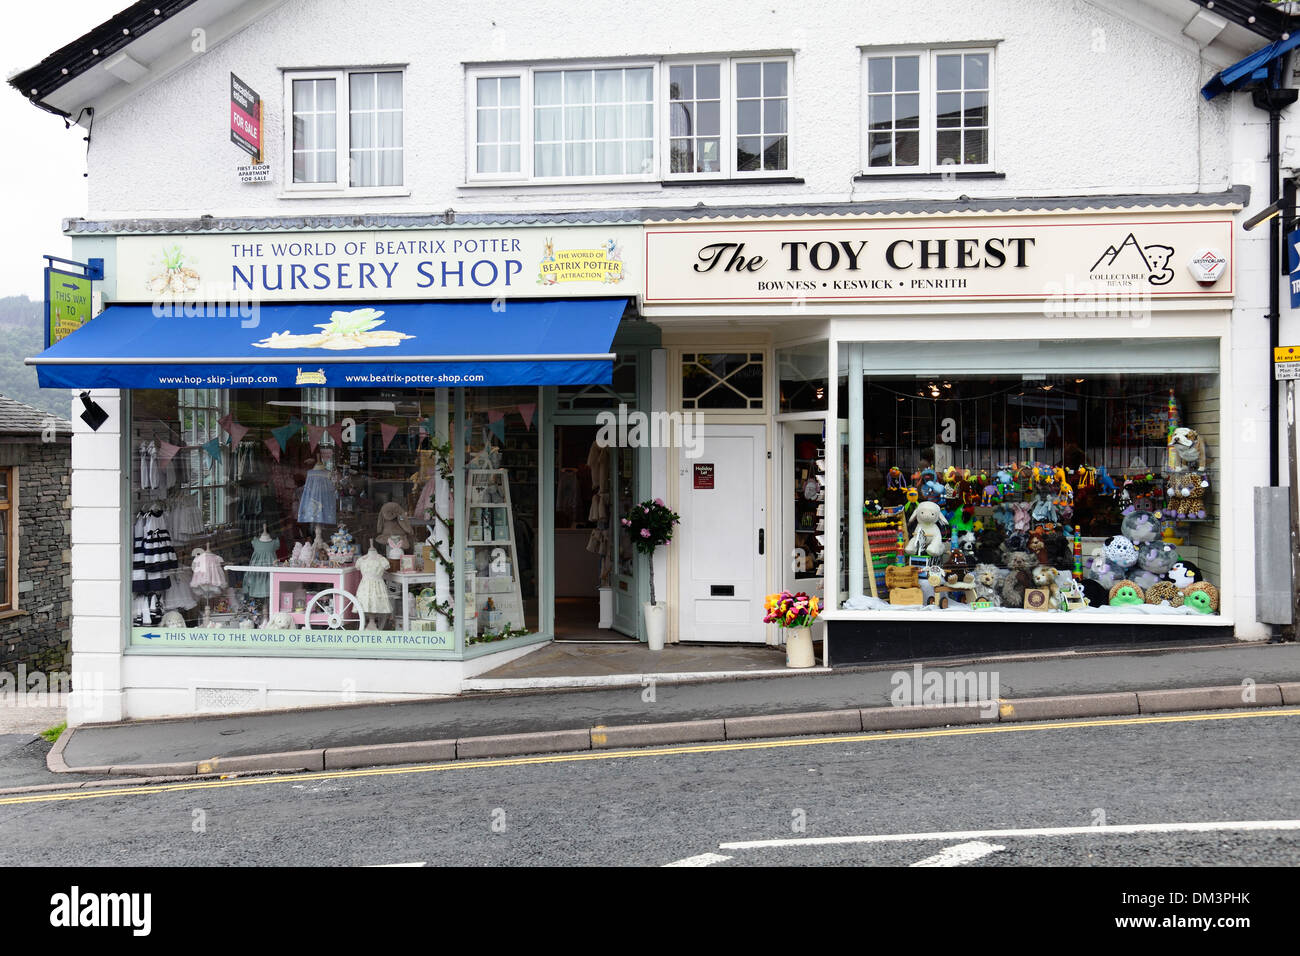 World of Beatrix Potter nursery Shop et Toy Chest Shop sur Crag Brow à Bowness-on-Windermere, Lake District, Angleterre, Royaume-Uni Banque D'Images